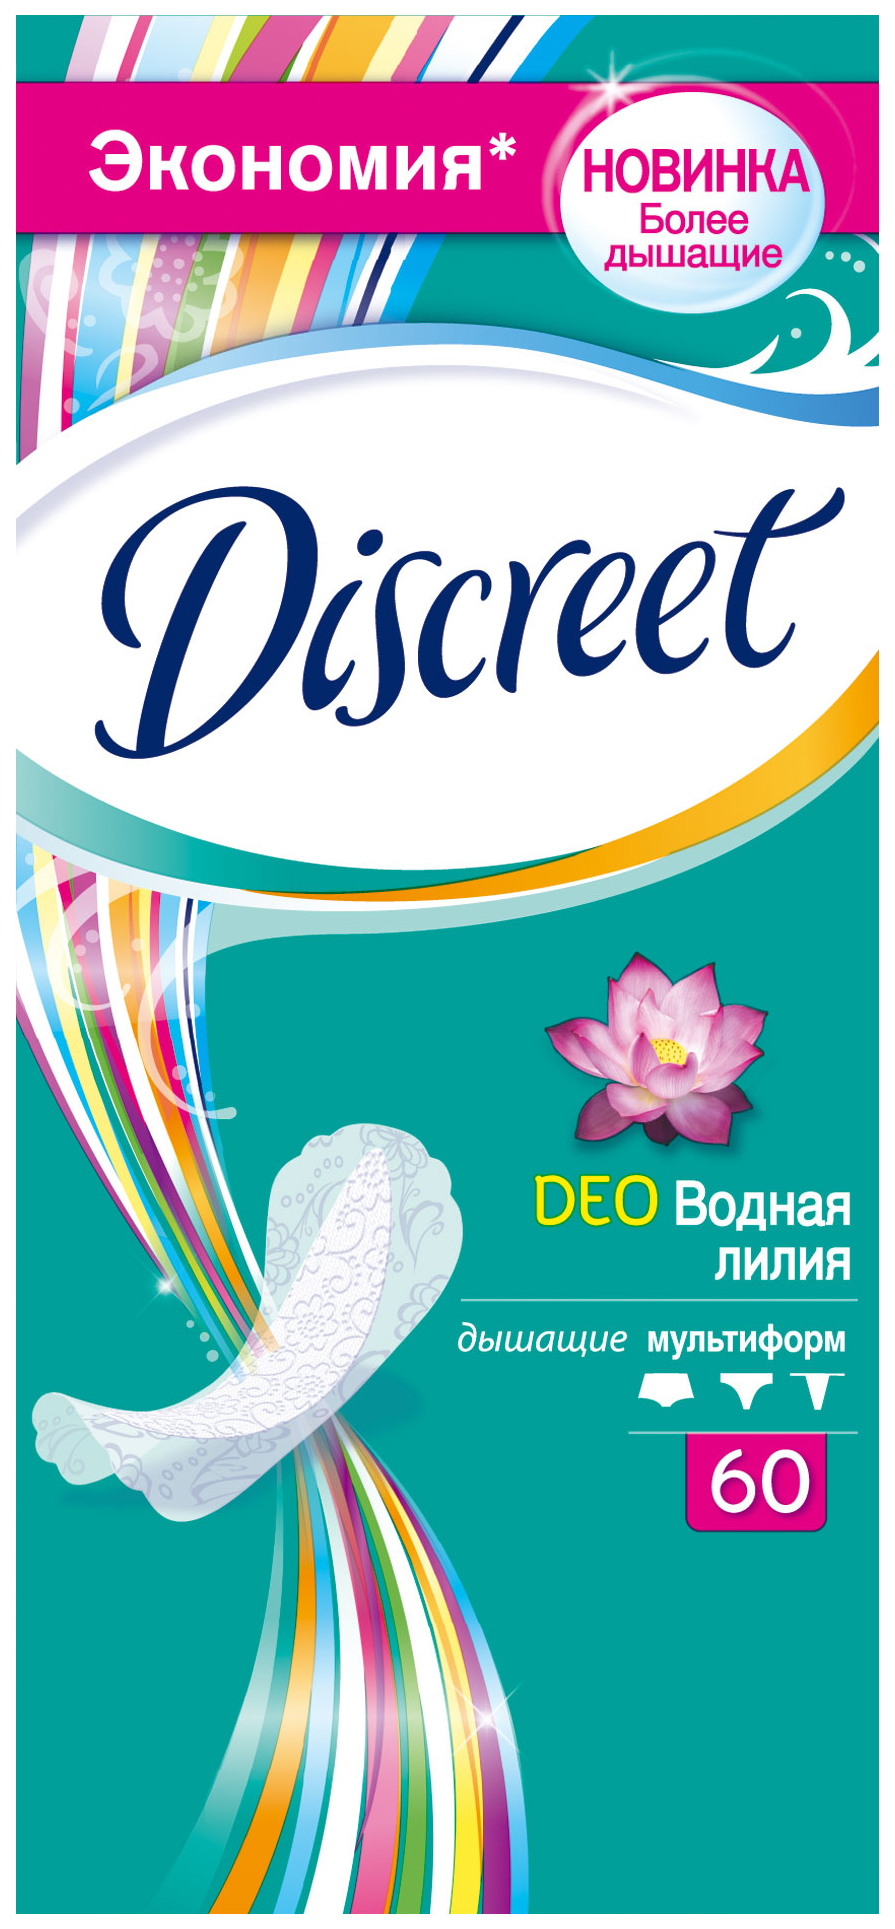 Прокладки Discreet Deo Водная лилия 60 шт